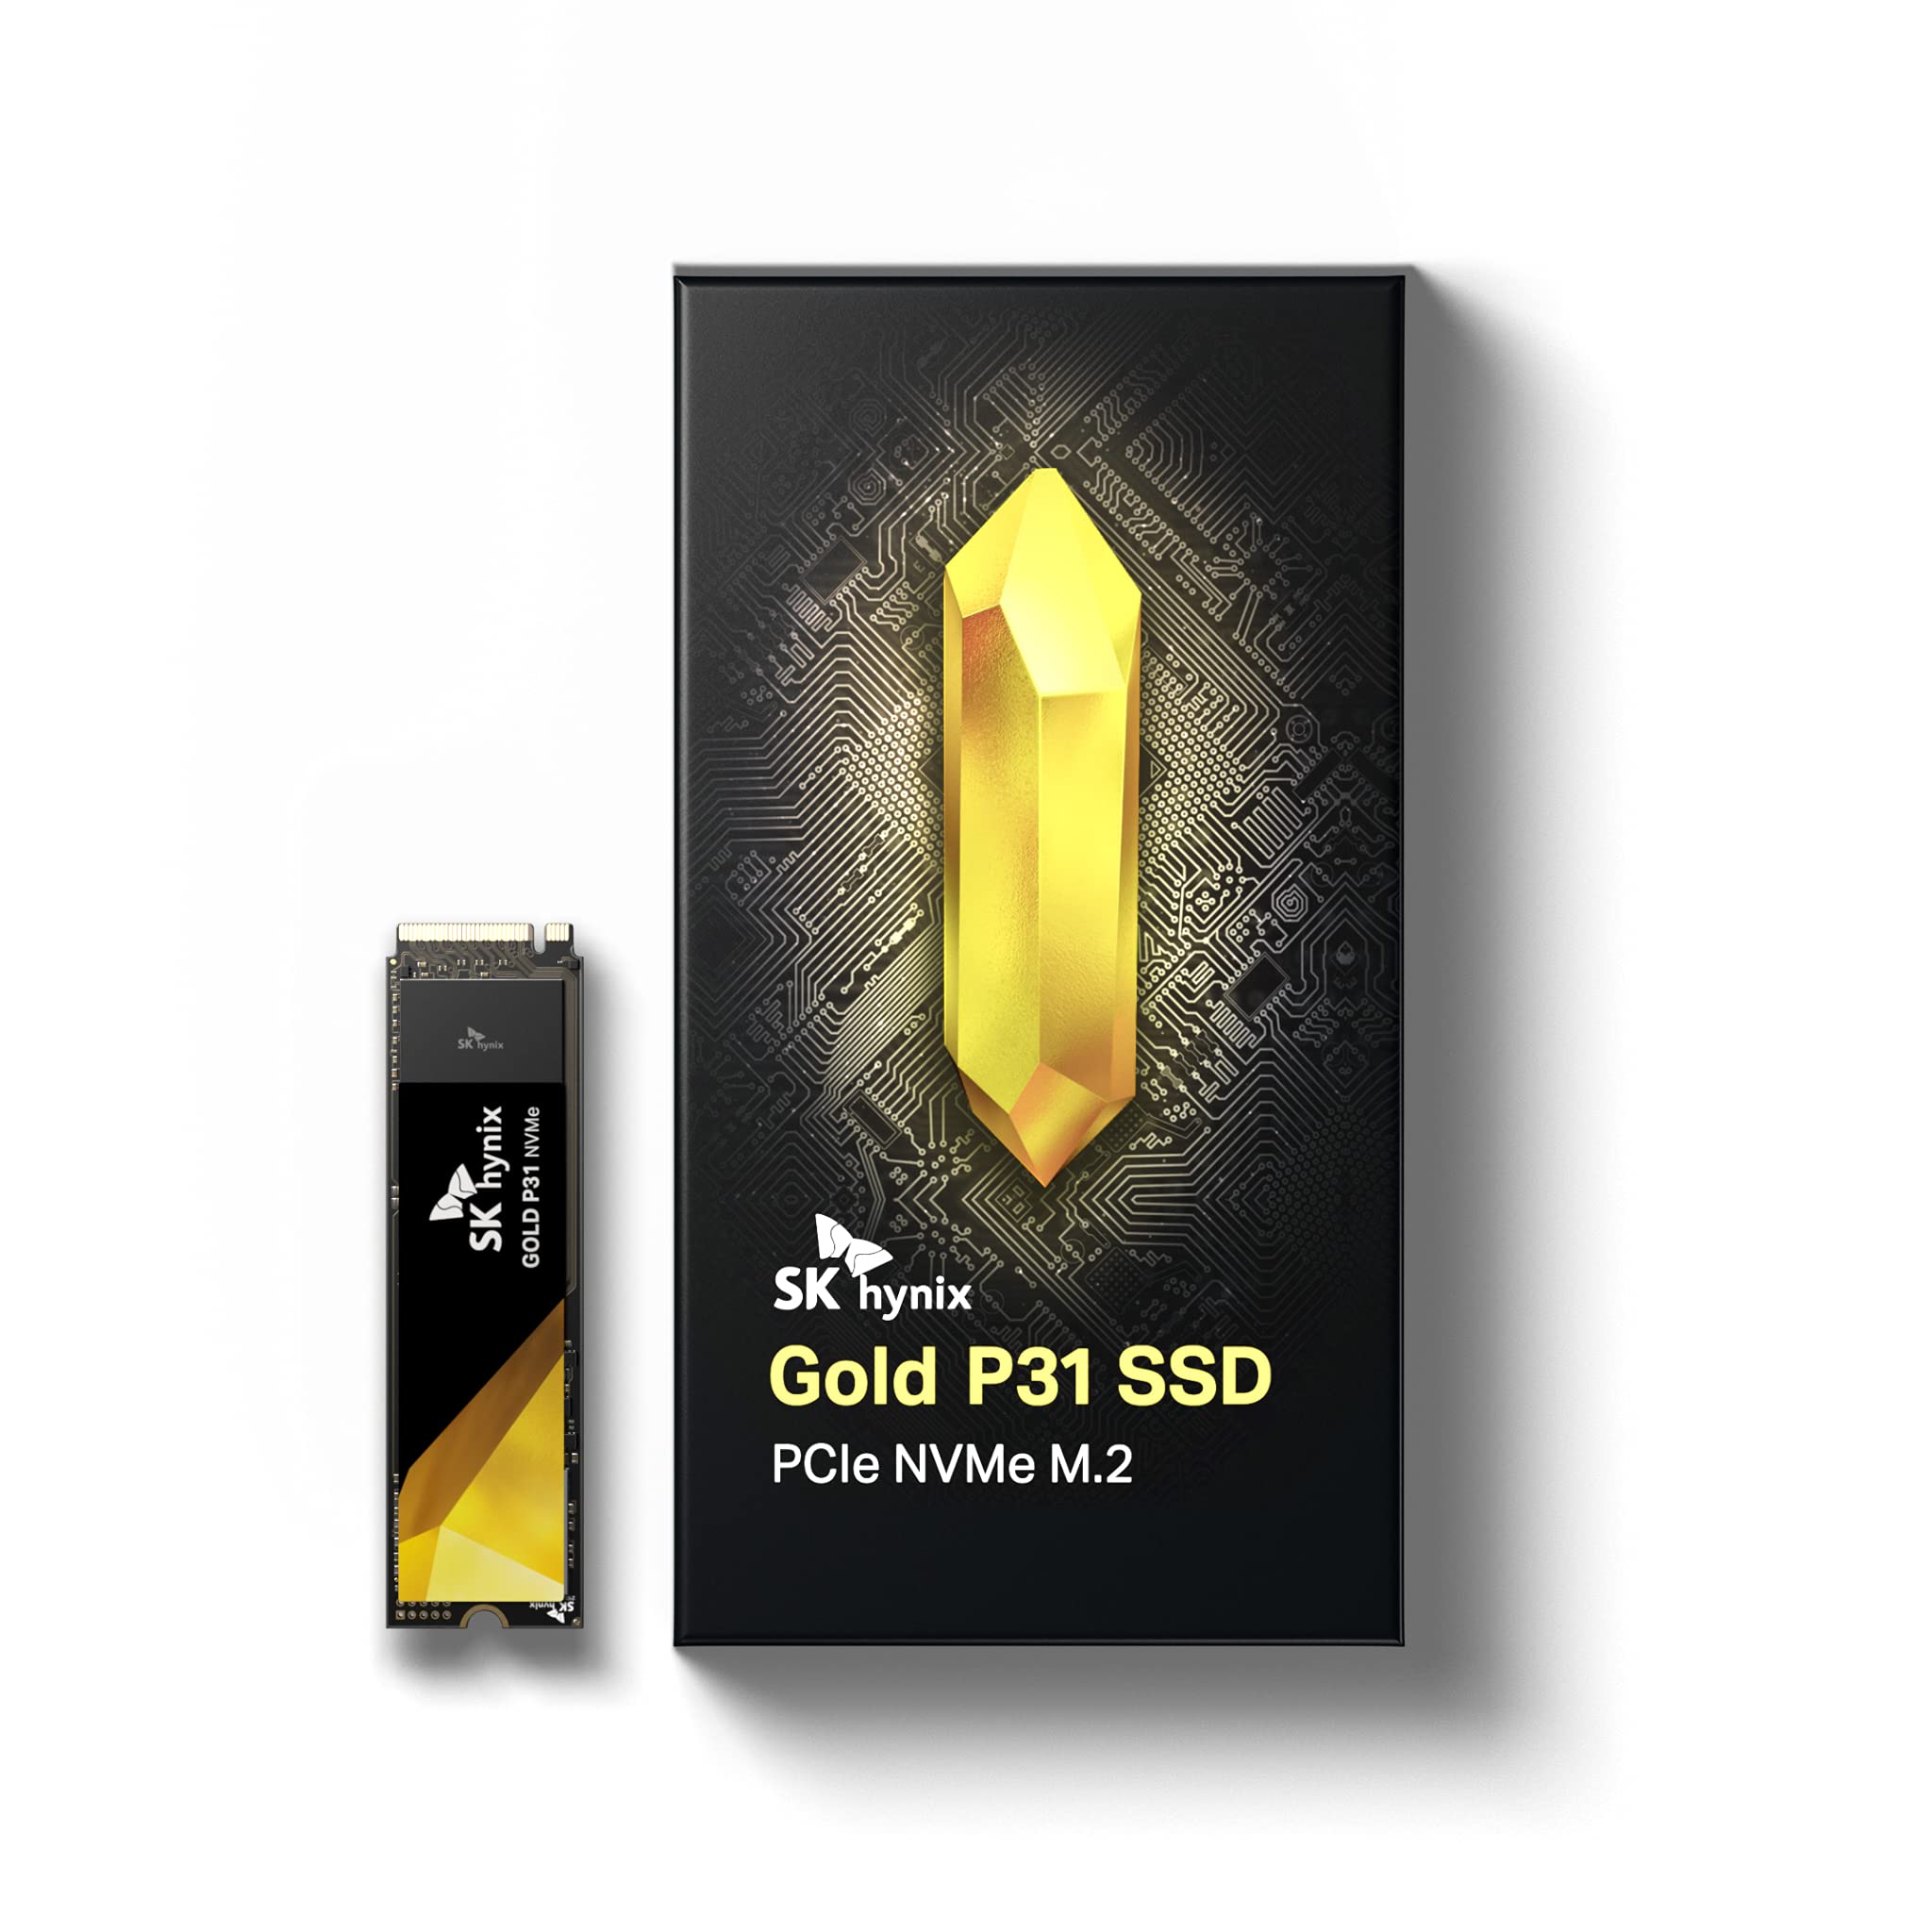 (Amazon) SK hynix Gold P31 1TB PCIe NVMe Gen3 M.2 - $114.99